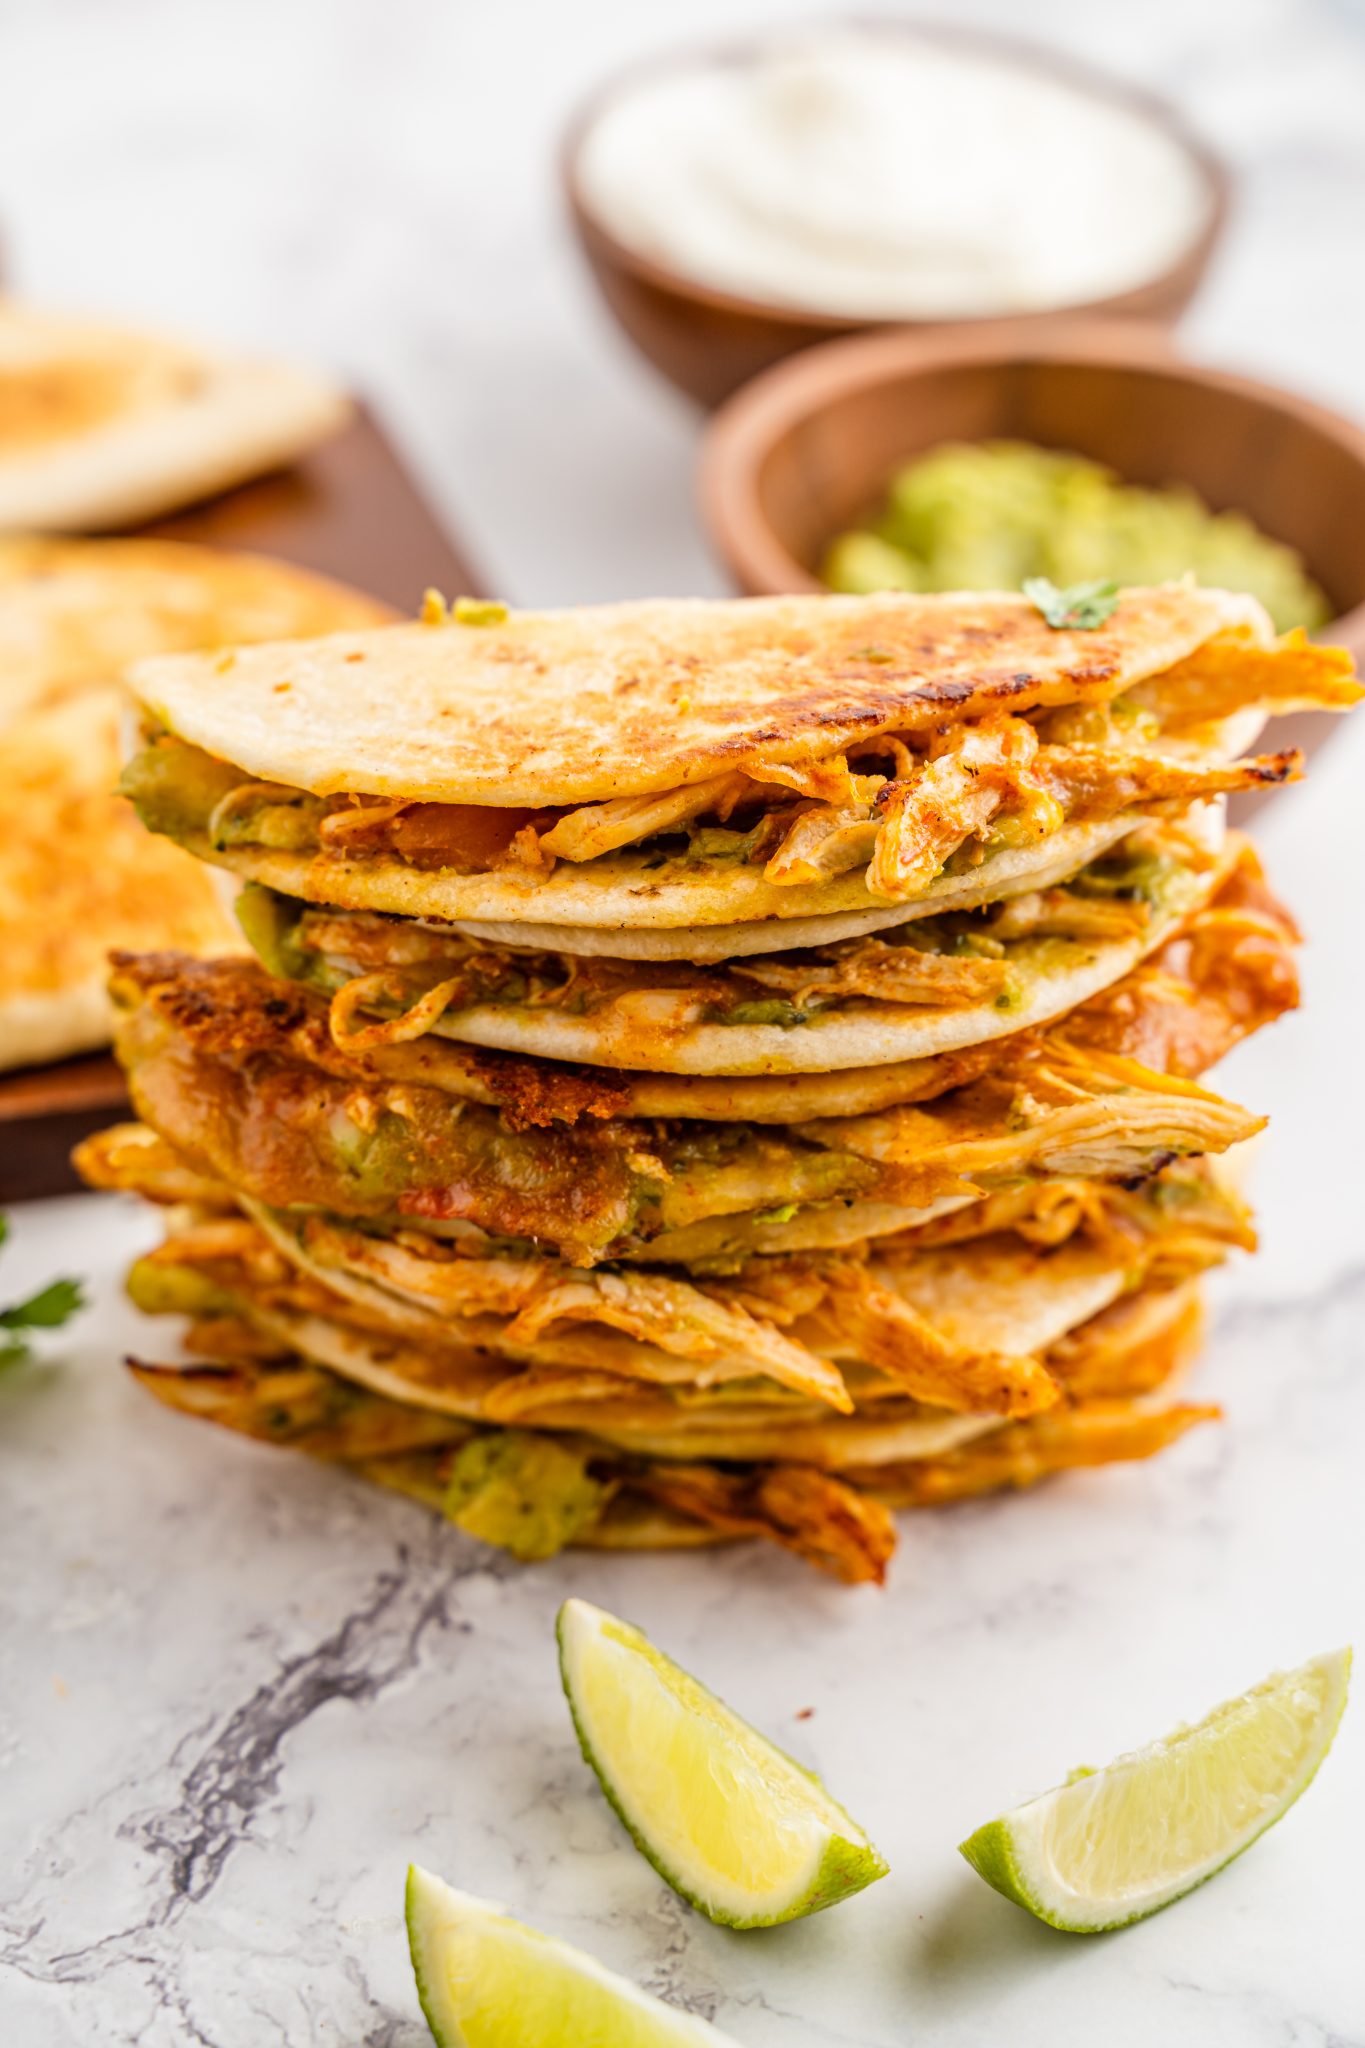 Tacos Dorados: Fried Tacos